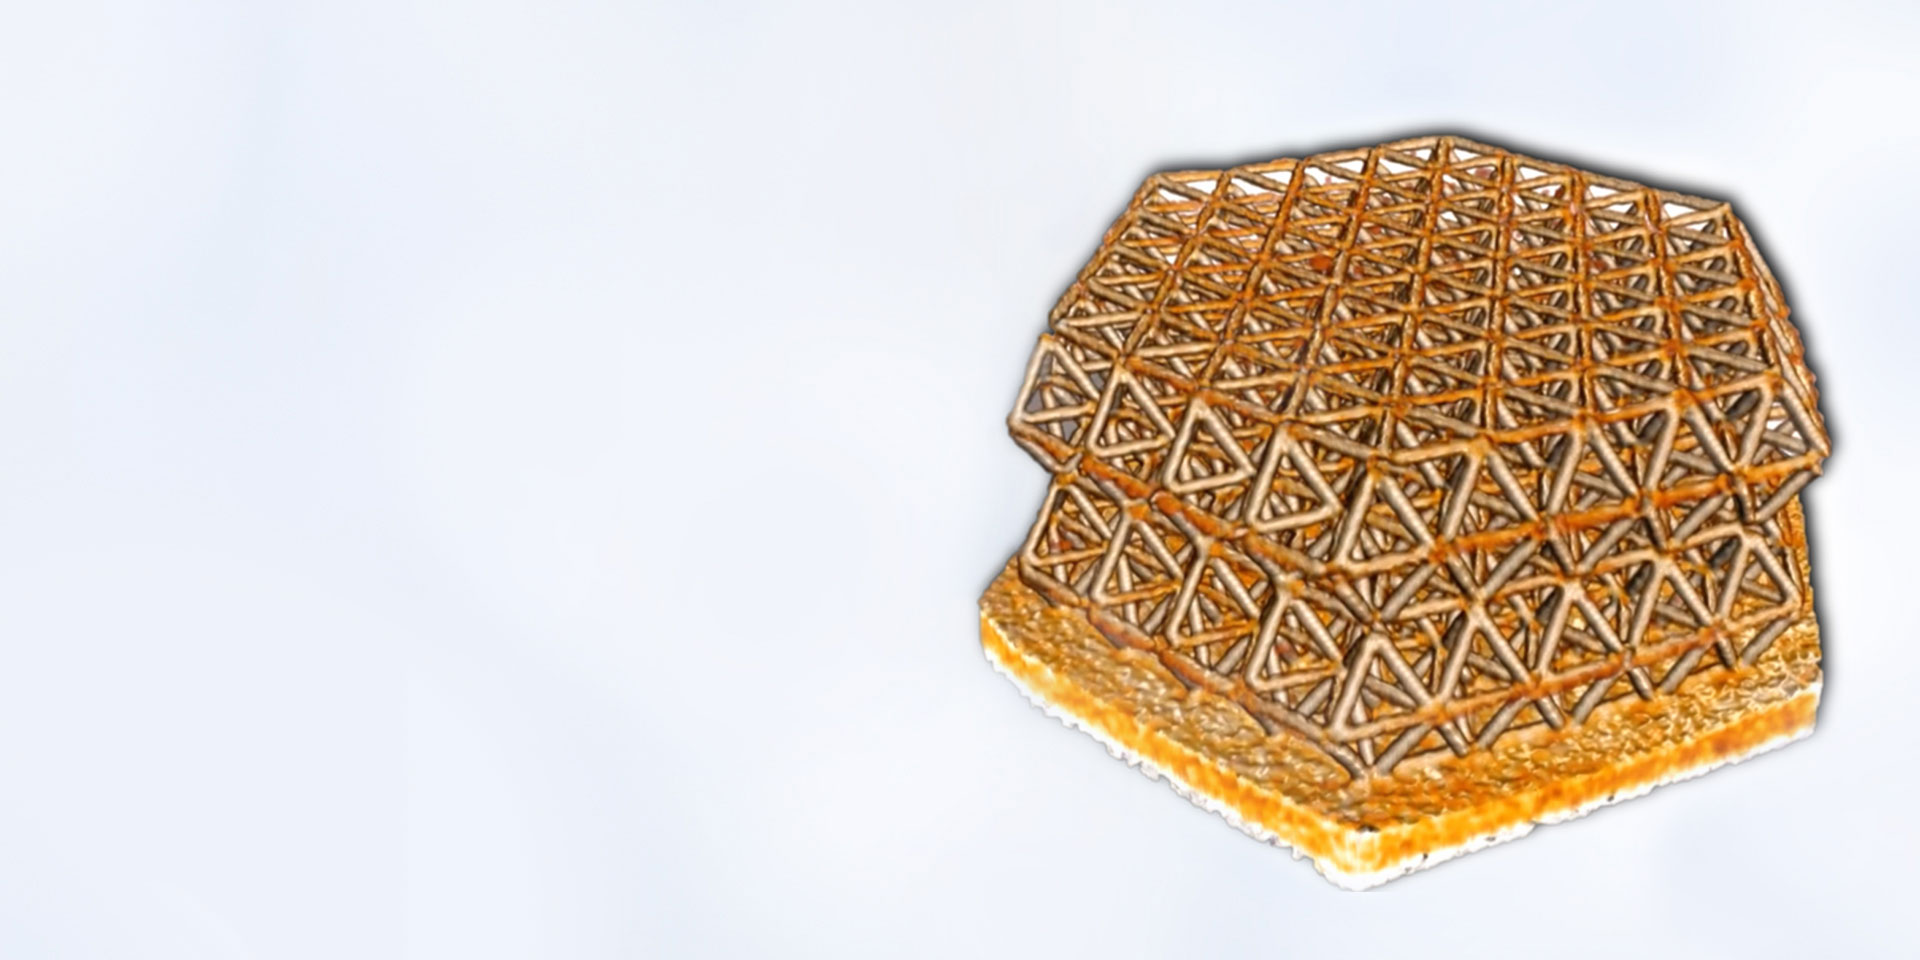 3D-gedruckte Nanogitterstruktur, Abbildung im Zernike-Phasekontrast vor In-situ-Komprimierungsexperimenten. Probe mit freundlicher Genehmigung von R. Schweiger, KIT, Deutschland (Probenbreite 30 µm).